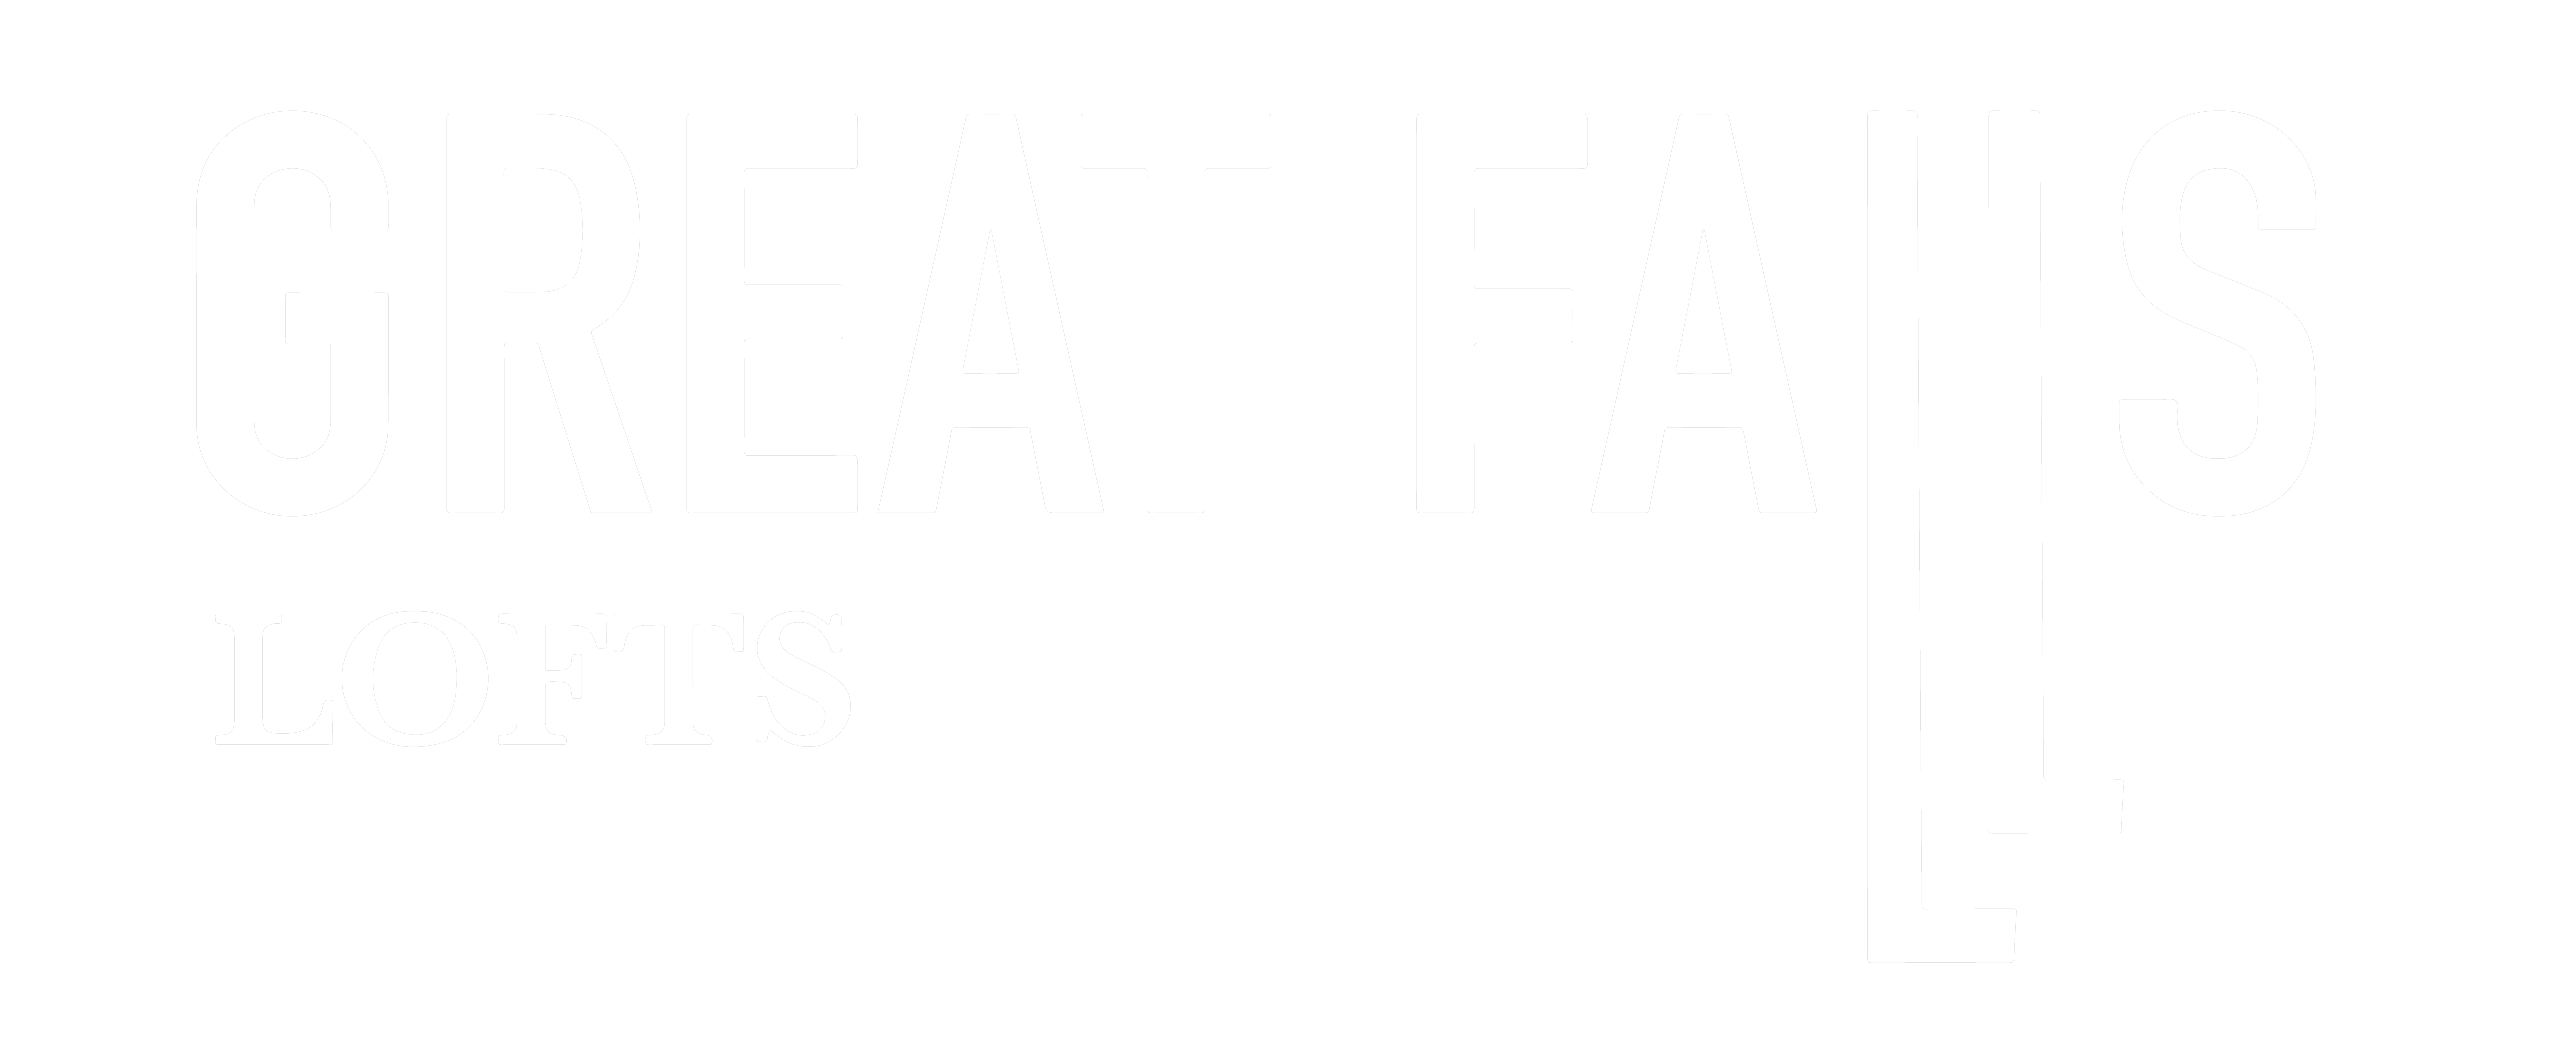 Great Falls Lofts – The Great Falls Lofts